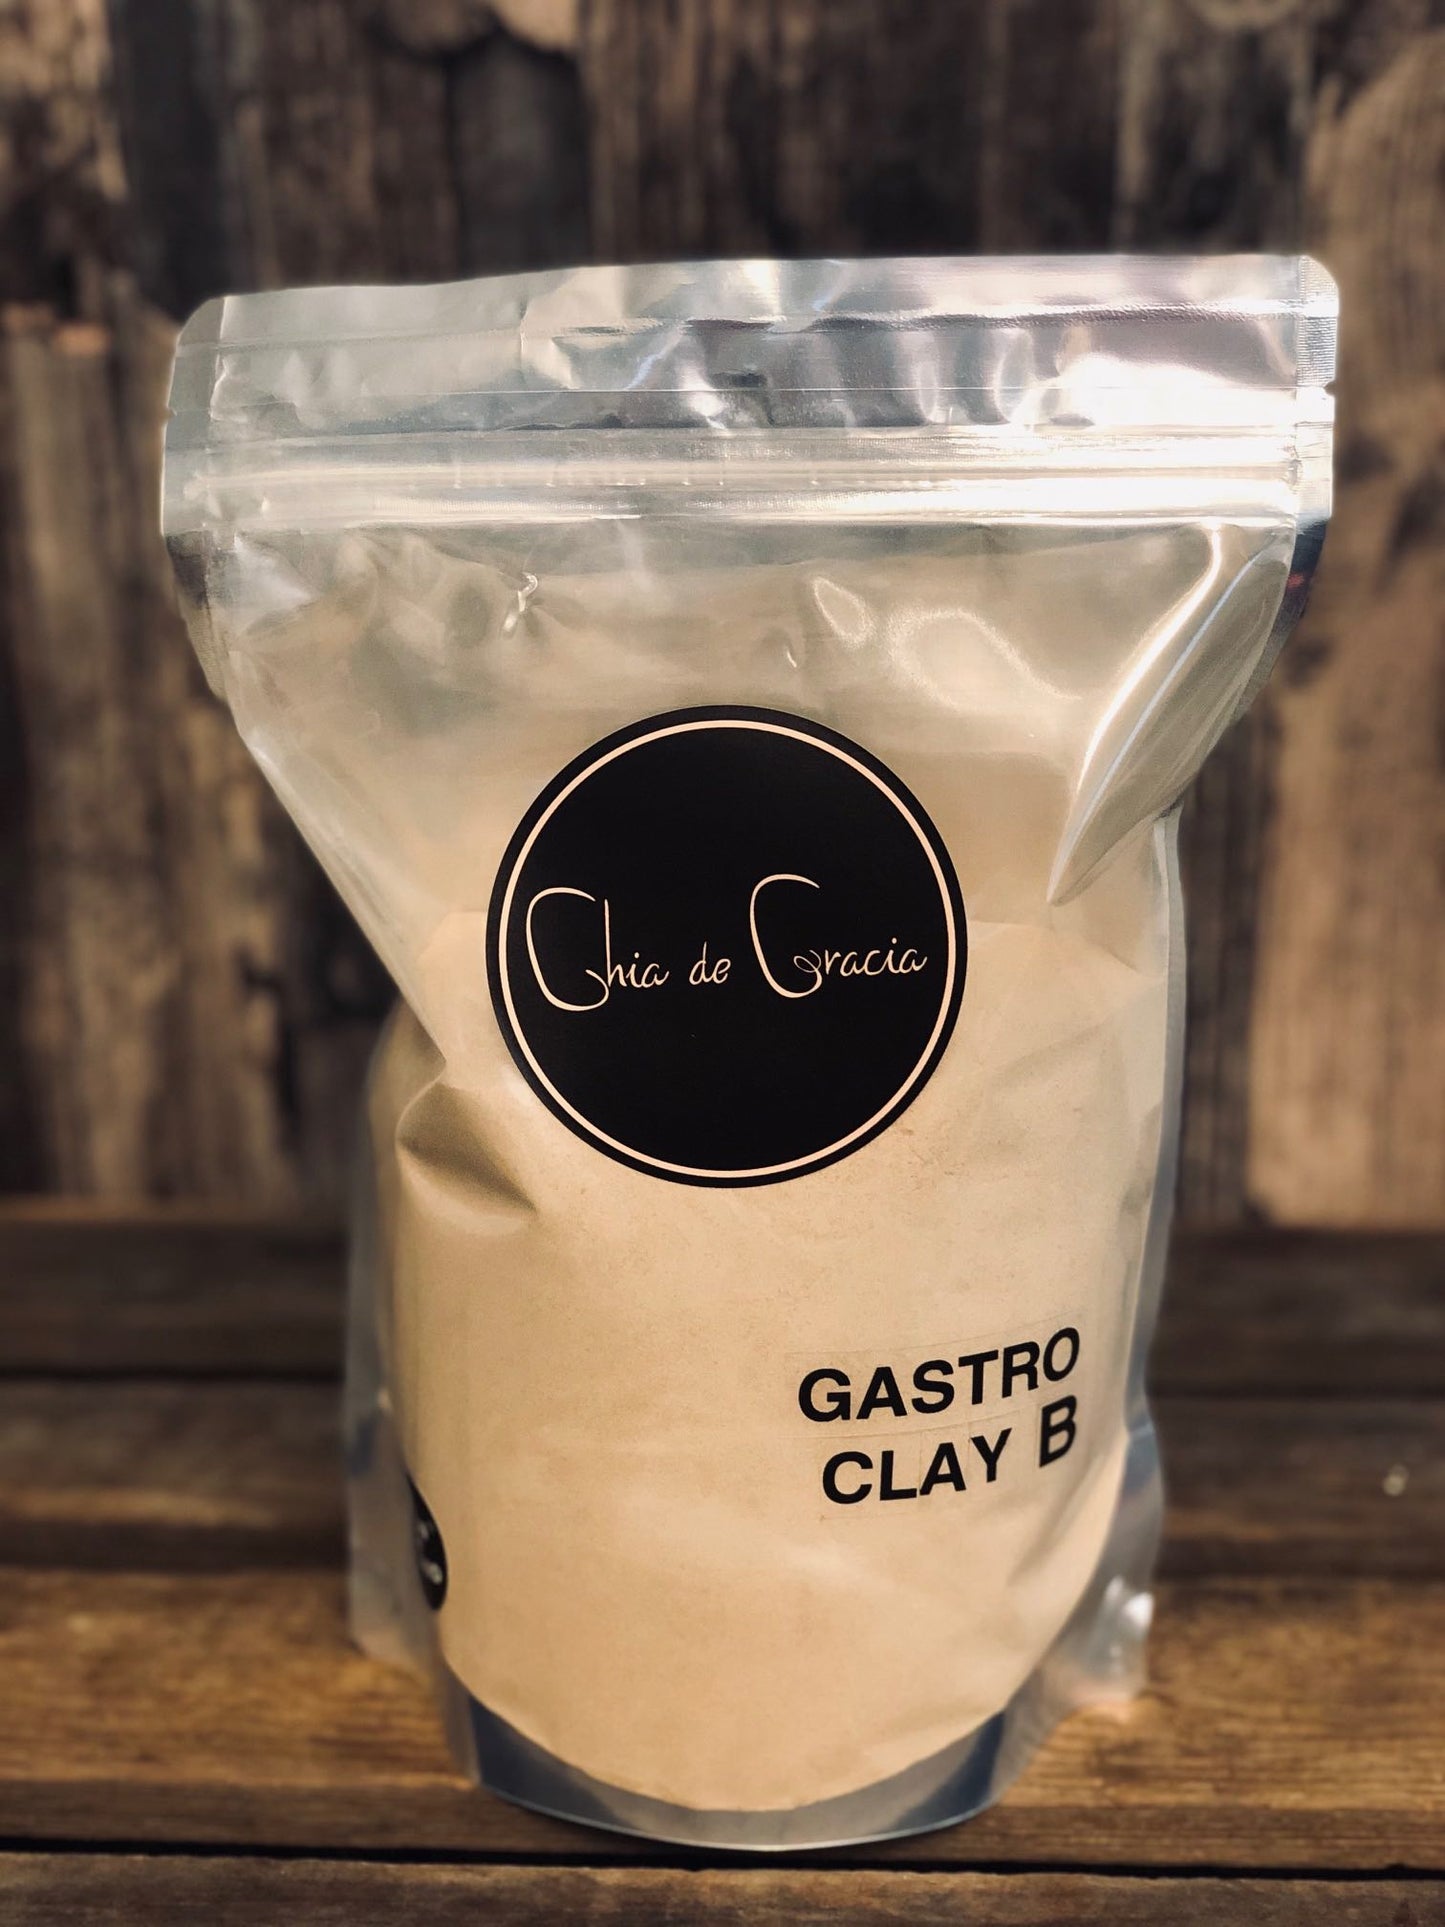 Gastro Clay B